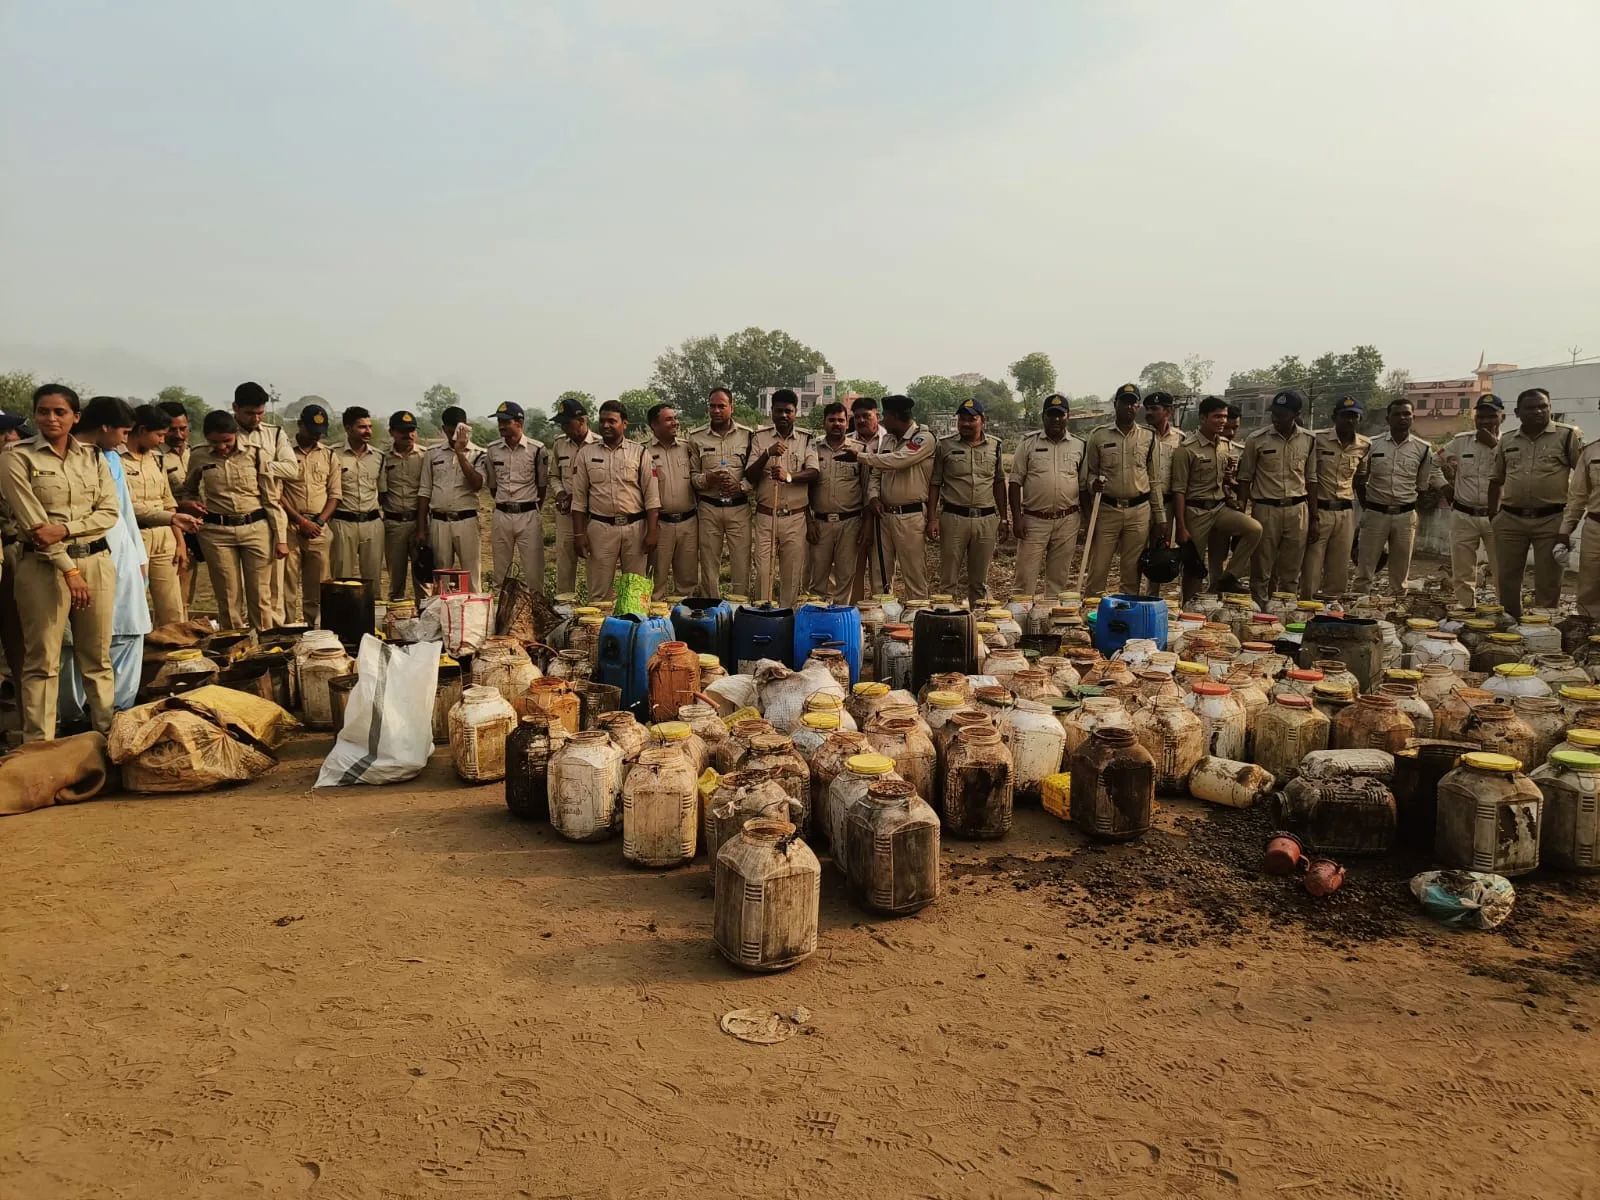 एडिशनल एसपी के नेतृत्व में शिकारपुरा थाना पुलिस ने 100 अधिकारियों कर्मचारियों के साथ जैनाबाद के बलवाड़ टेकरी पर अवैध शराब निर्माण के ठिकानों पर दबिश देखकर ₹1 लाख की कच्ची भट्टी की निर्मित शराब की जप्त और 10 लख रुपए का महुआ लहन किया नष्ट, दो आरोपी गिरफ्तार | New India Times